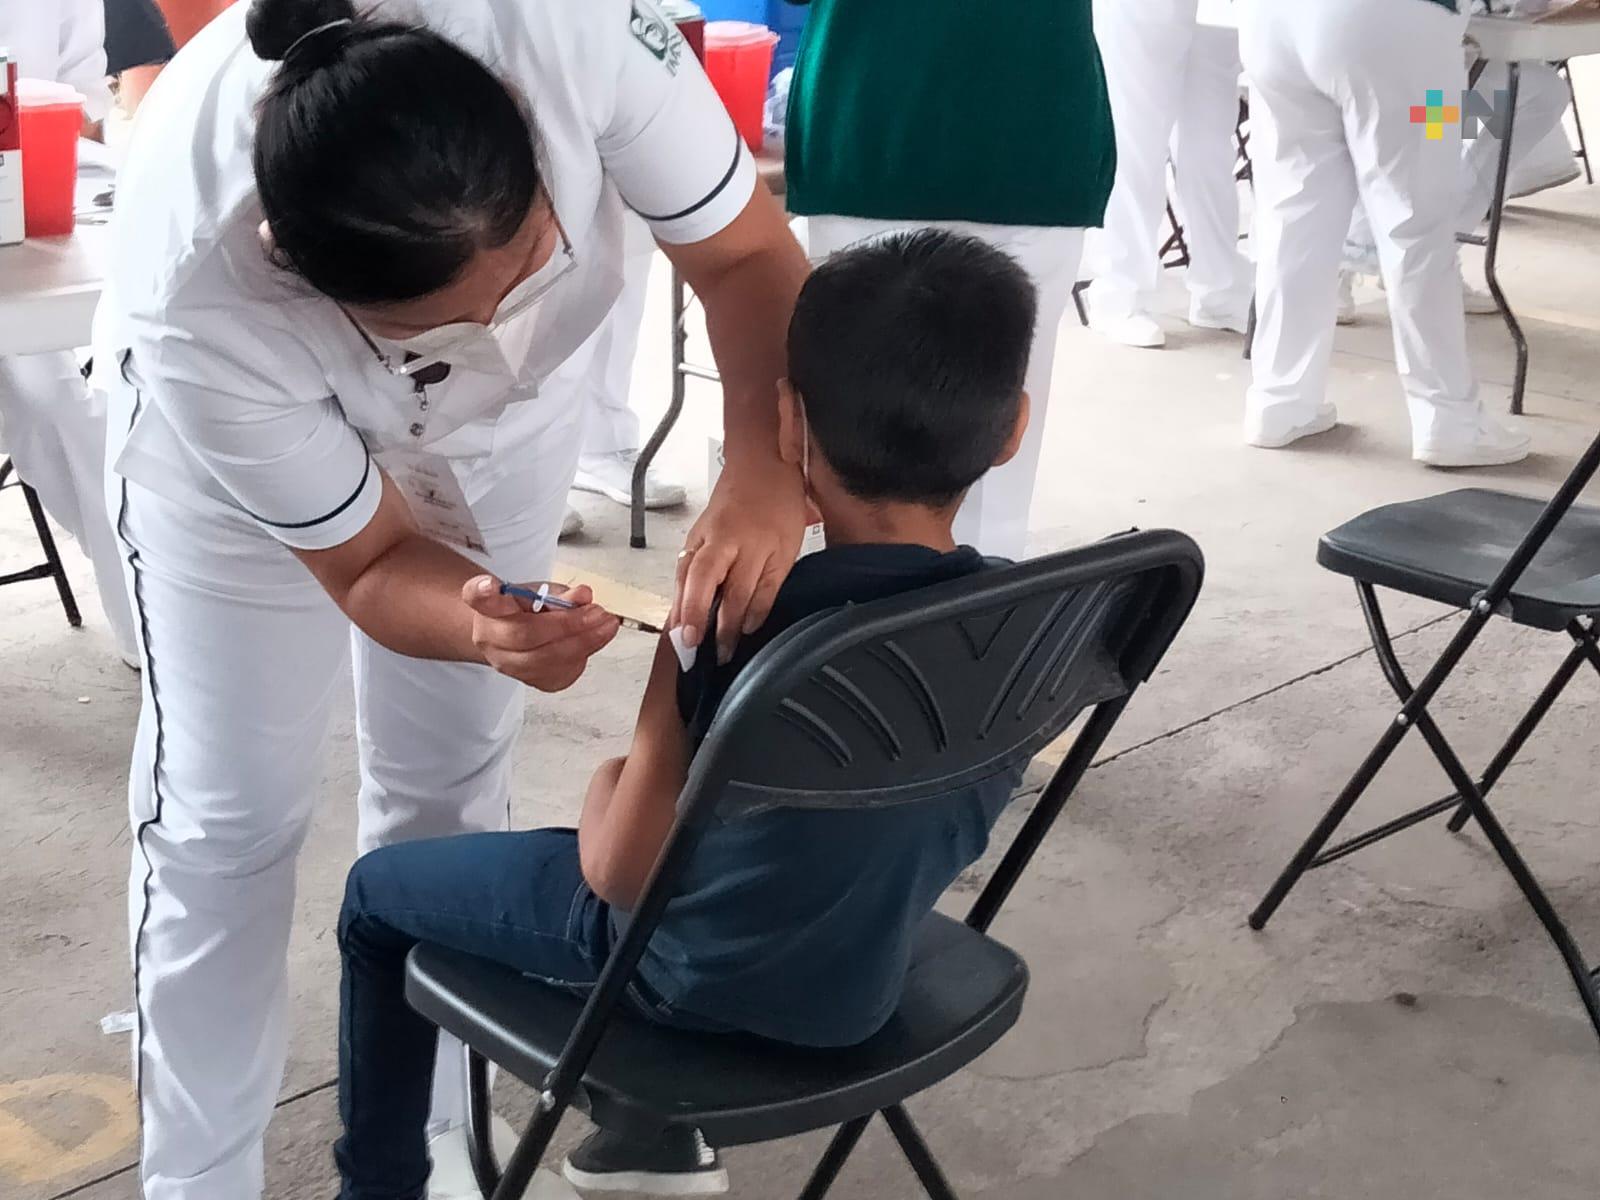 Inicia jornada de vacunación anticovid a menores de edad en Teocelo